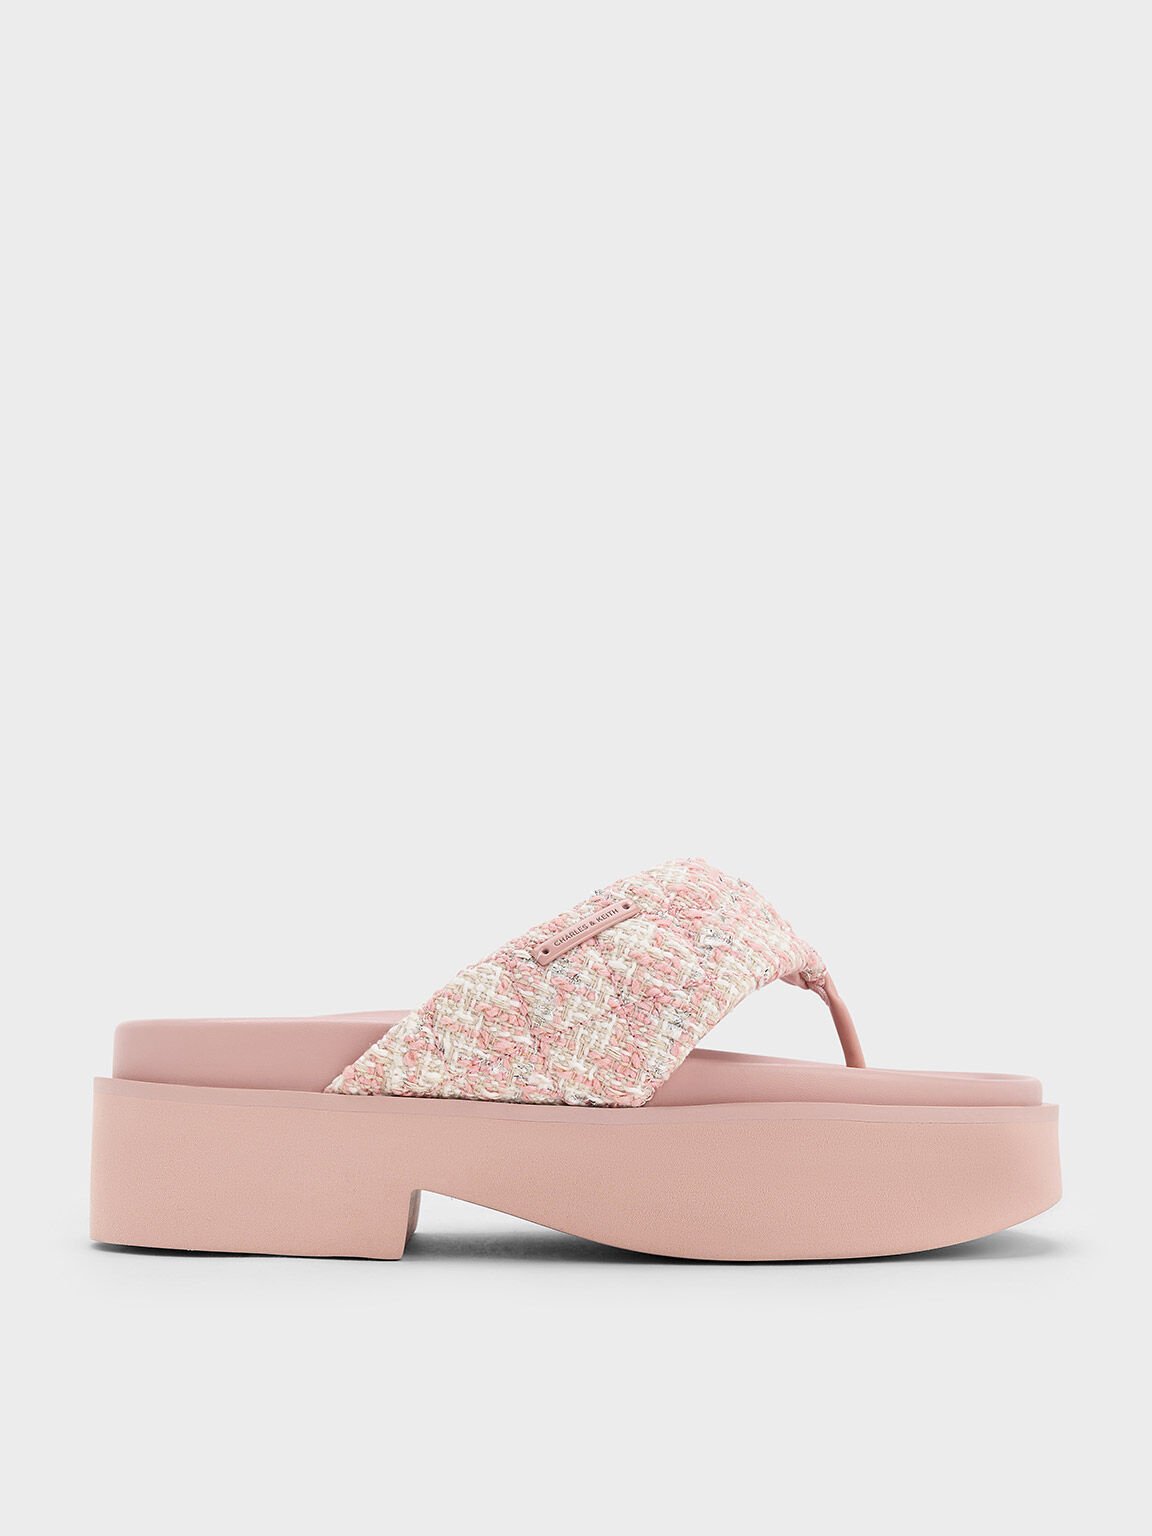 Sandal Thong Platform V-Strap Tweed, Light Pink, hi-res